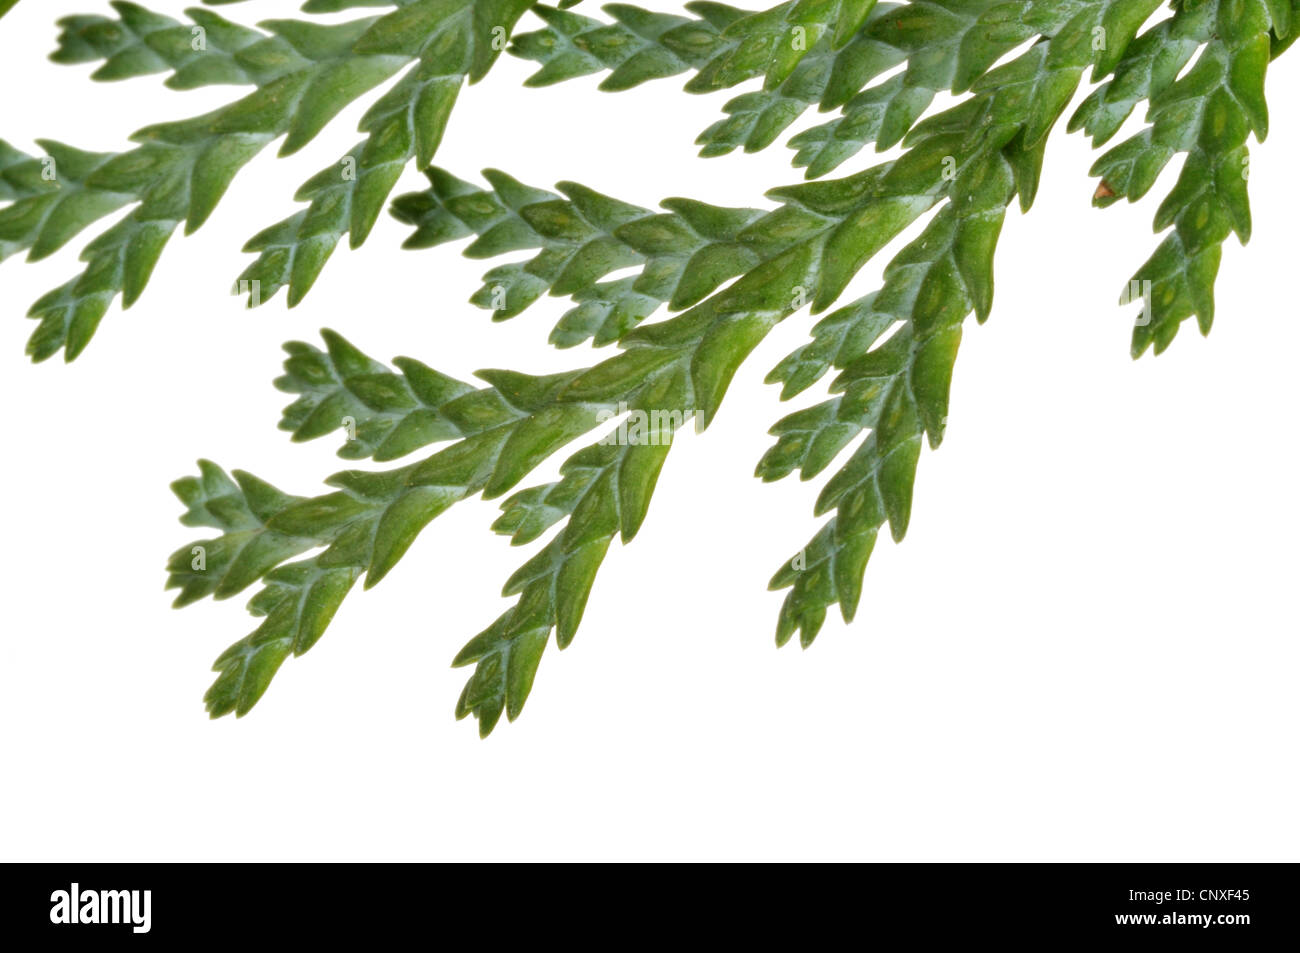 Lawson cypress, Port Orford cedar (Chamaecyparis lawsoniana), branch of a Plumosa cultivar Stock Photo